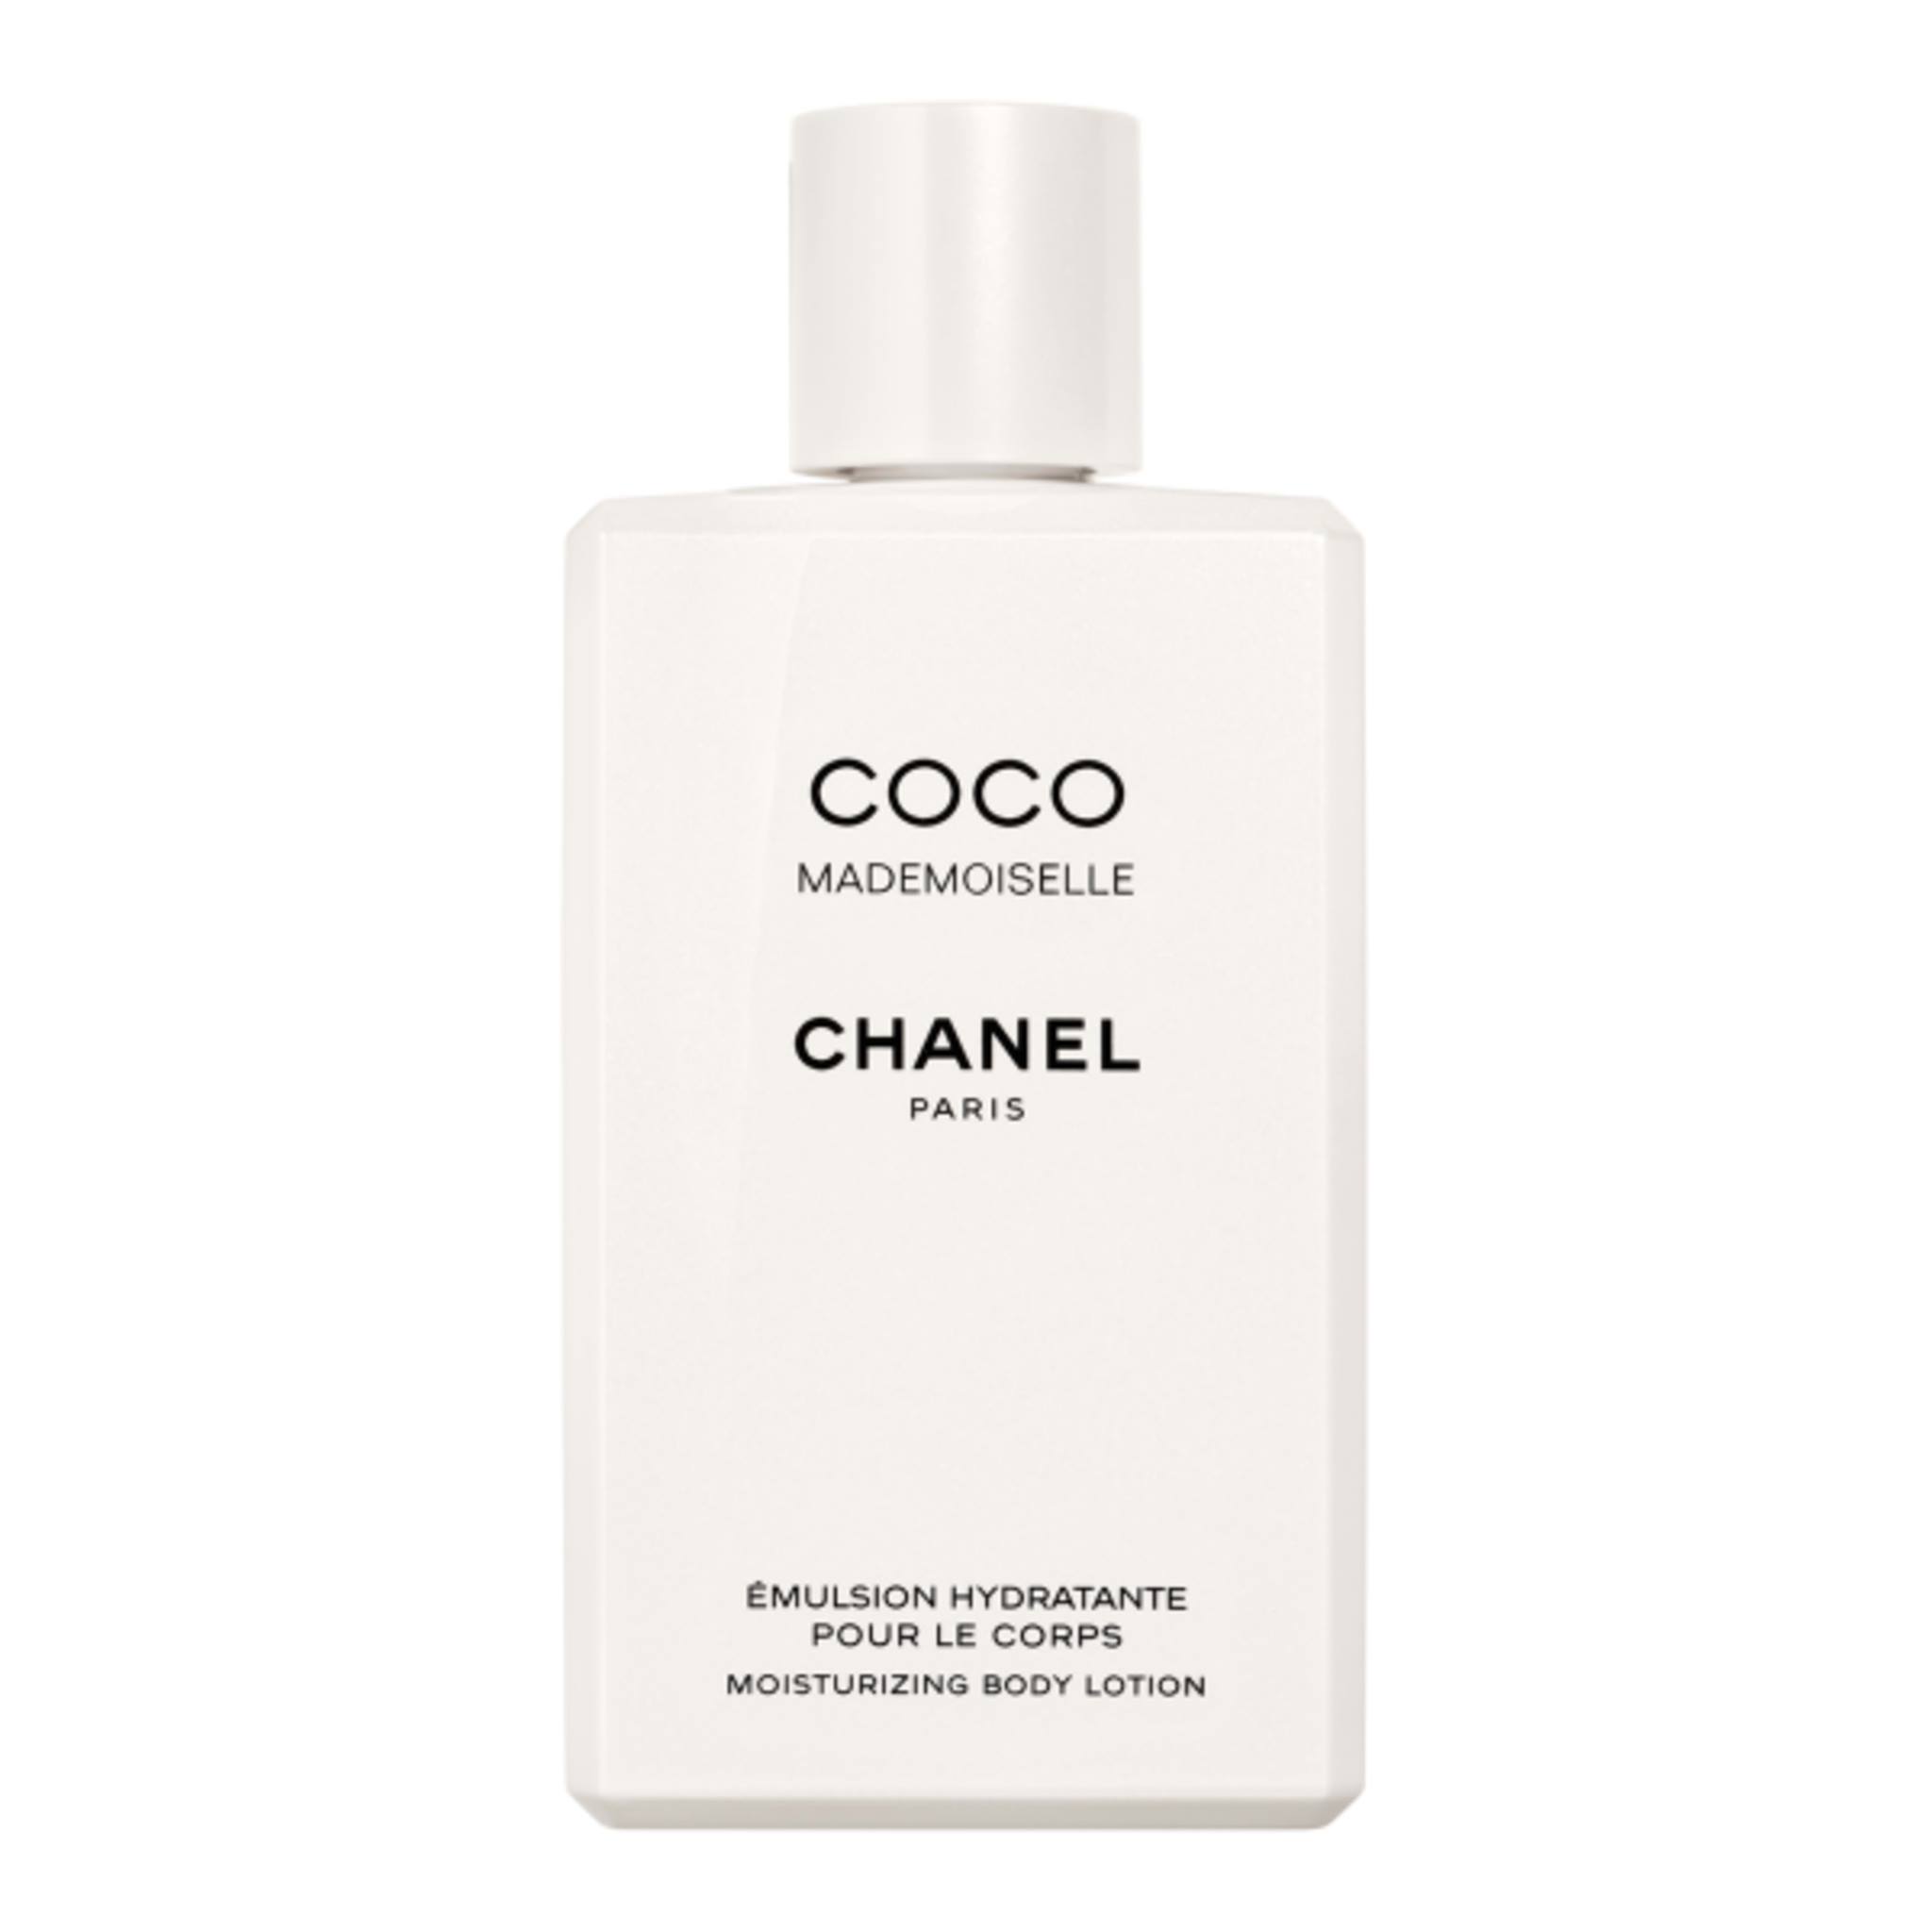 Mua Sữa Dưỡng Thể Chanel Coco Body Lotion Emulsion Hydratante 200ml giá  1100000 trên Boshopvn